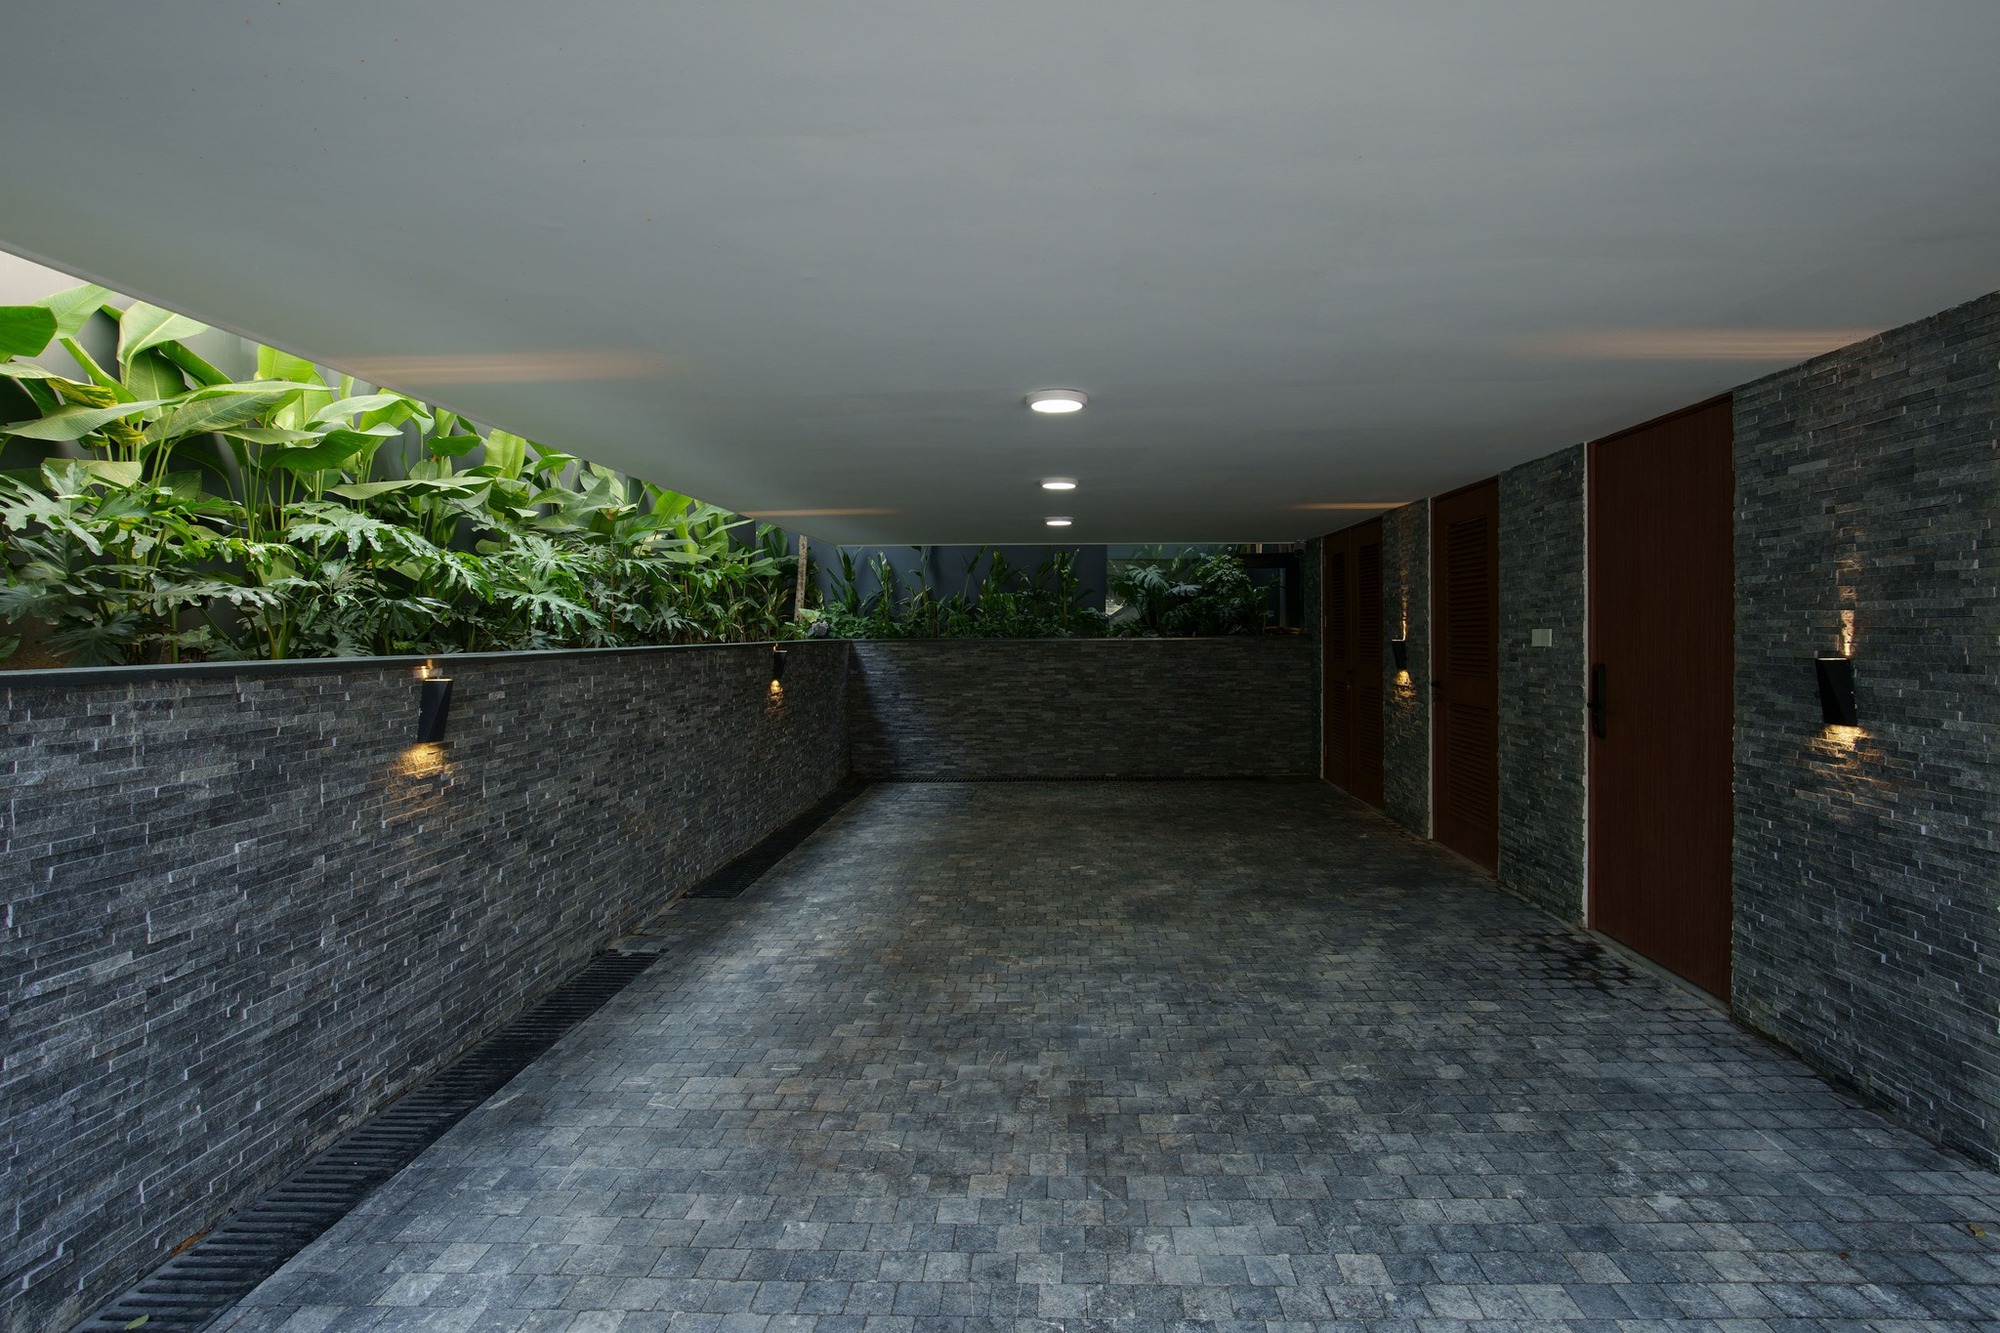  Nhà sử dụng công nghệ sàn hộp rỗng giúp tối ưu không gian kiến trúc   - Ảnh 9.